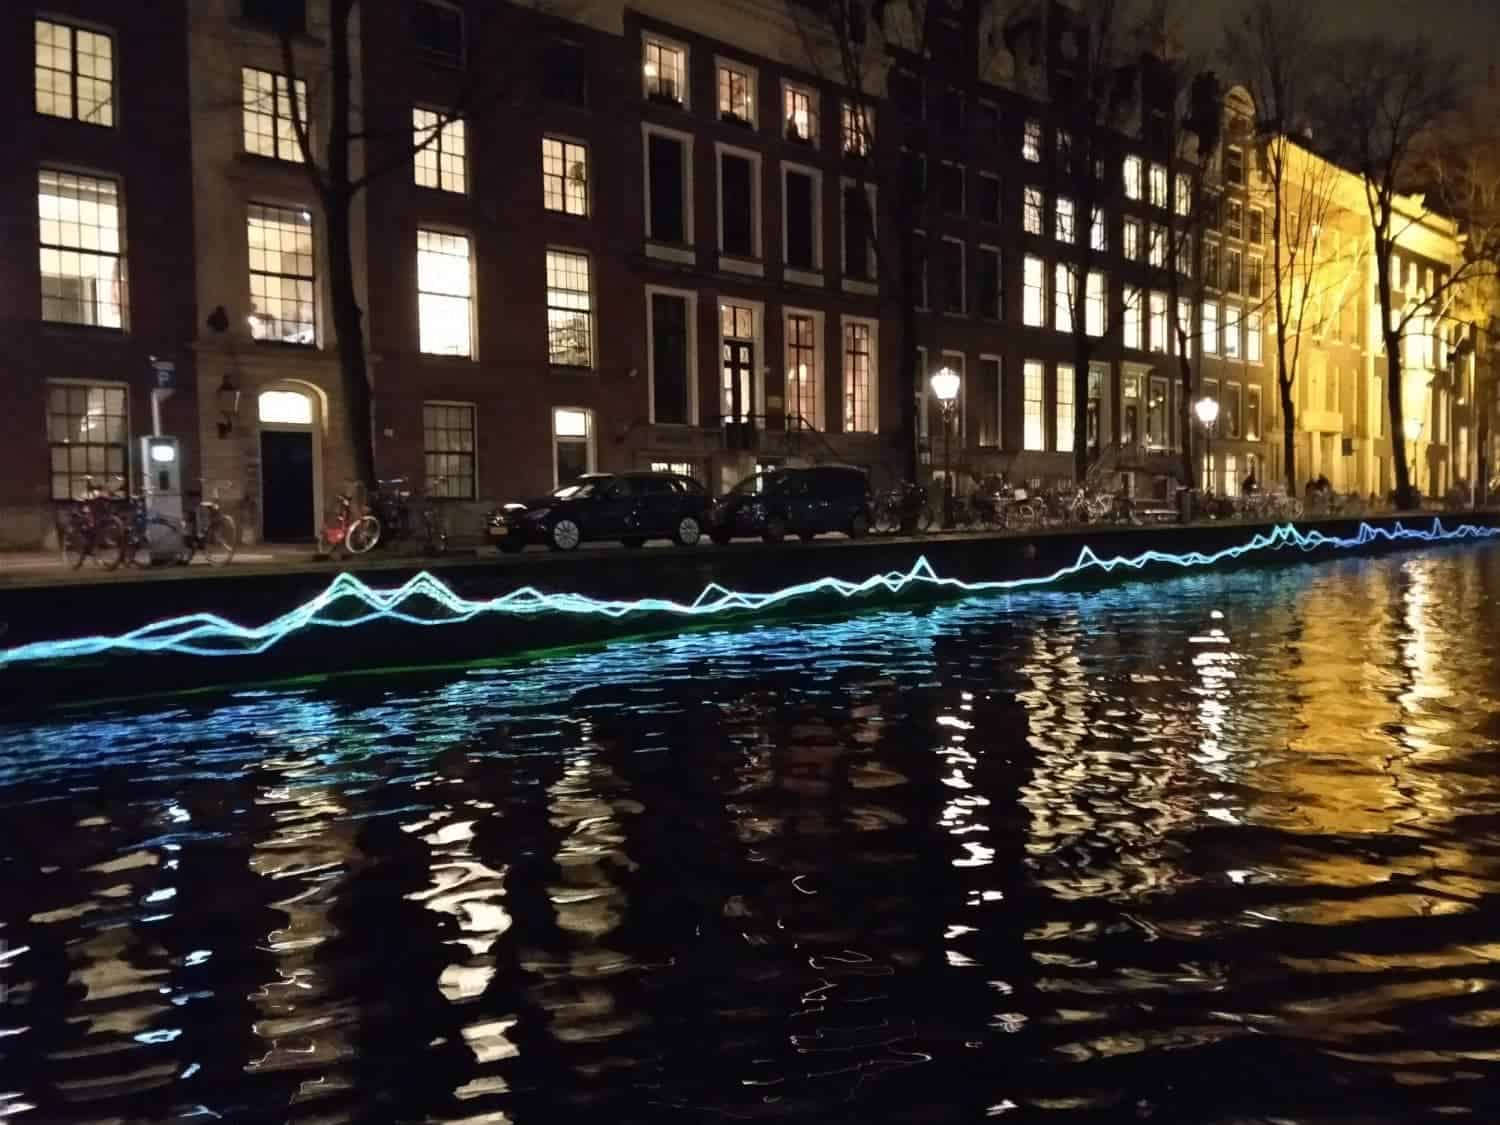 Amsterdam Light Festival 2017-2018